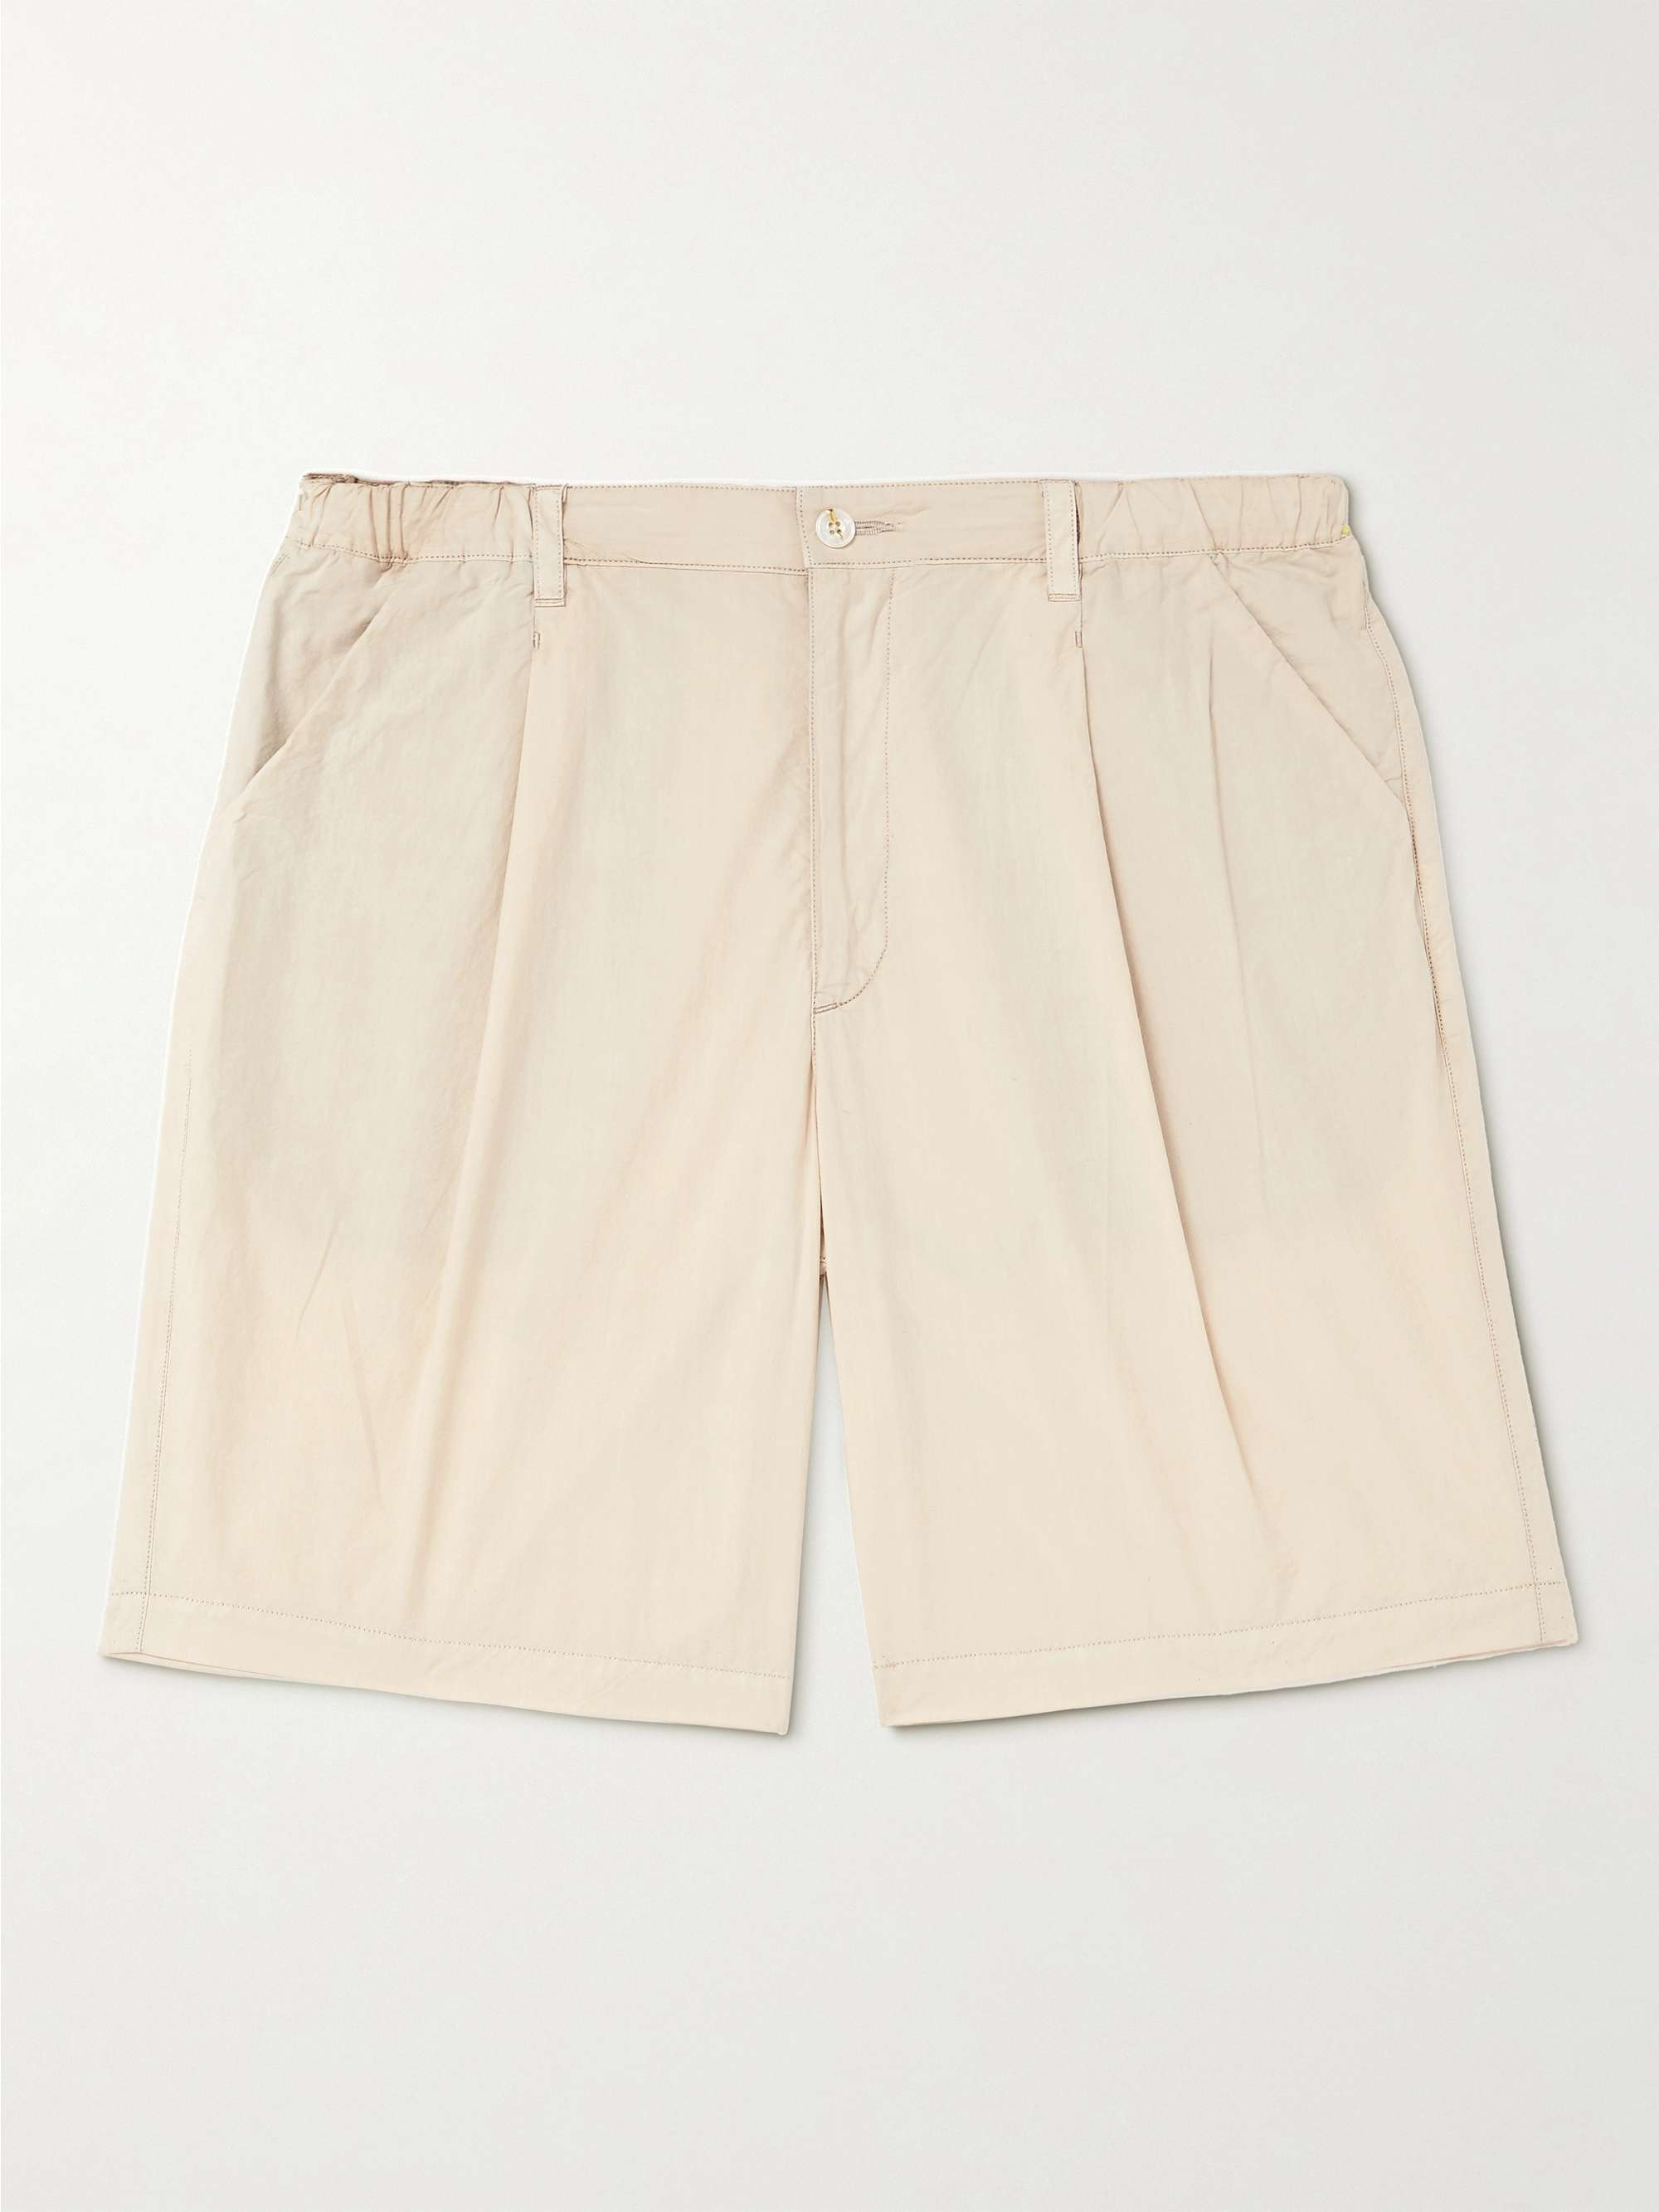 COTTLE Zen Loan Tactac Wide-Leg Pleated Cotton Shorts